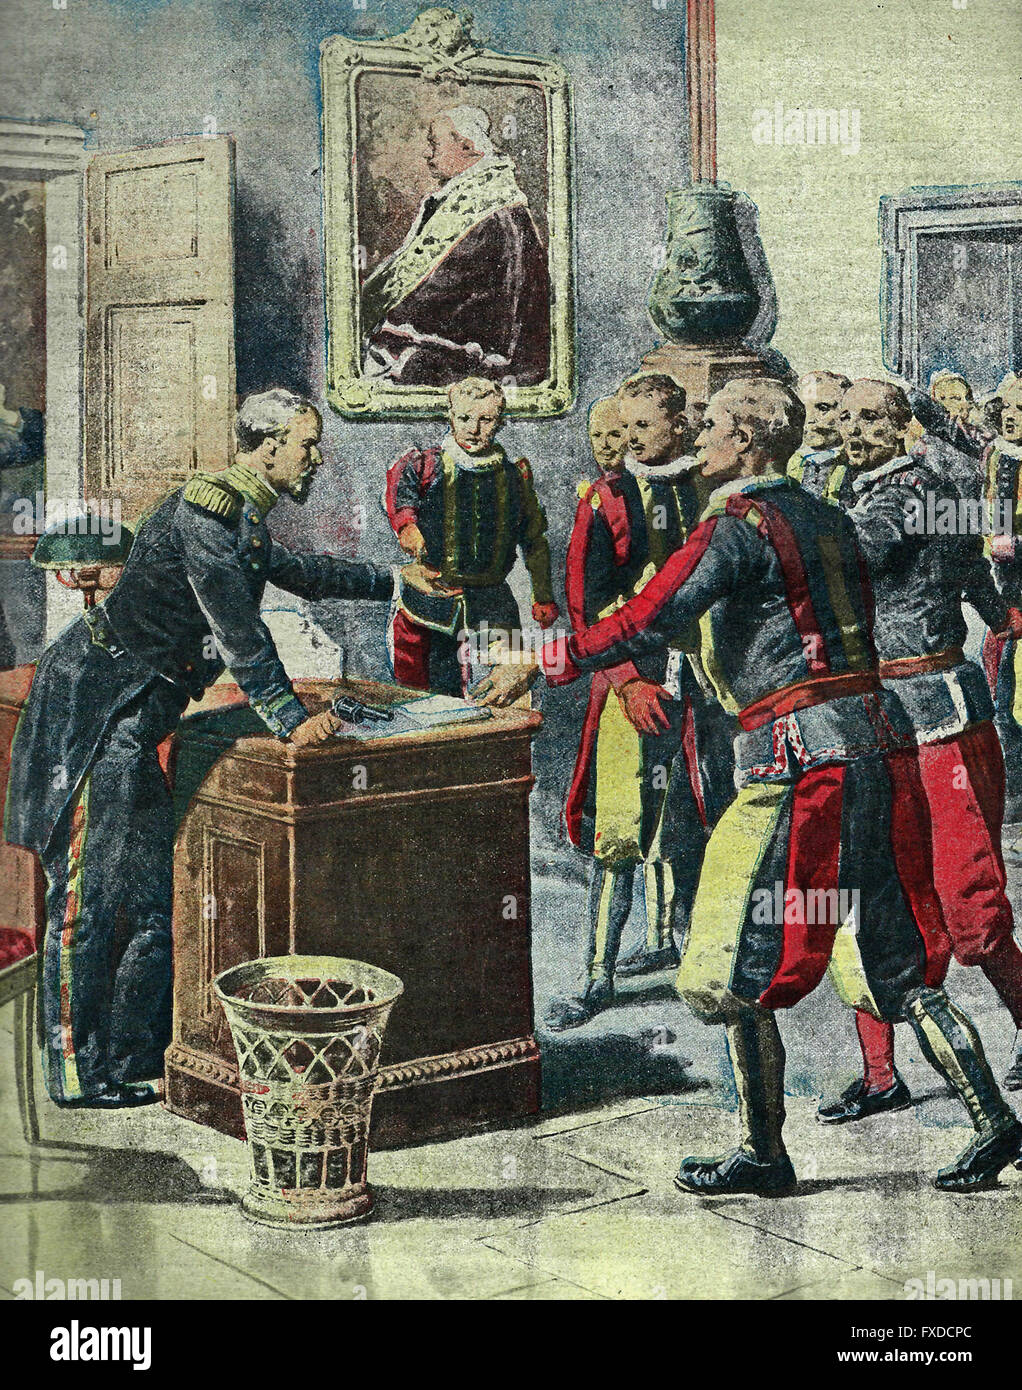 Une révolution miniature au Vatican ; la conversation dramatique entre le Colonel répondre et les Gardes Suisses, 1913 Banque D'Images